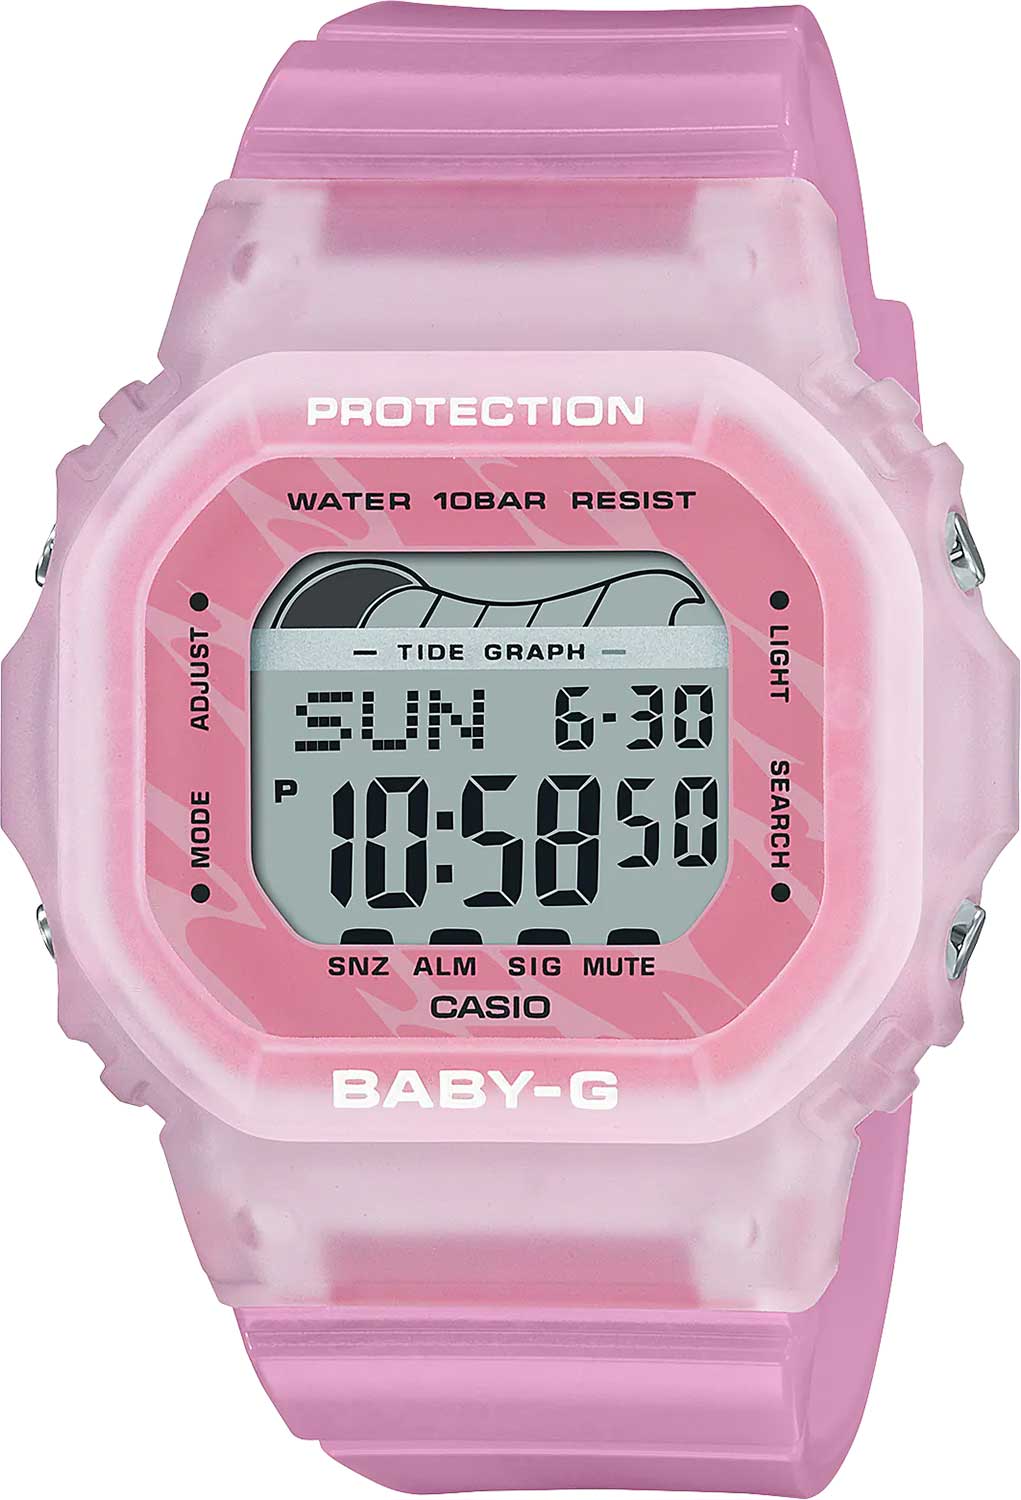 Наручные часы Casio Baby-G BLX-565S-4E — купить в интернет-магазине  по лучшей цене, фото, характеристики, инструкция, описание